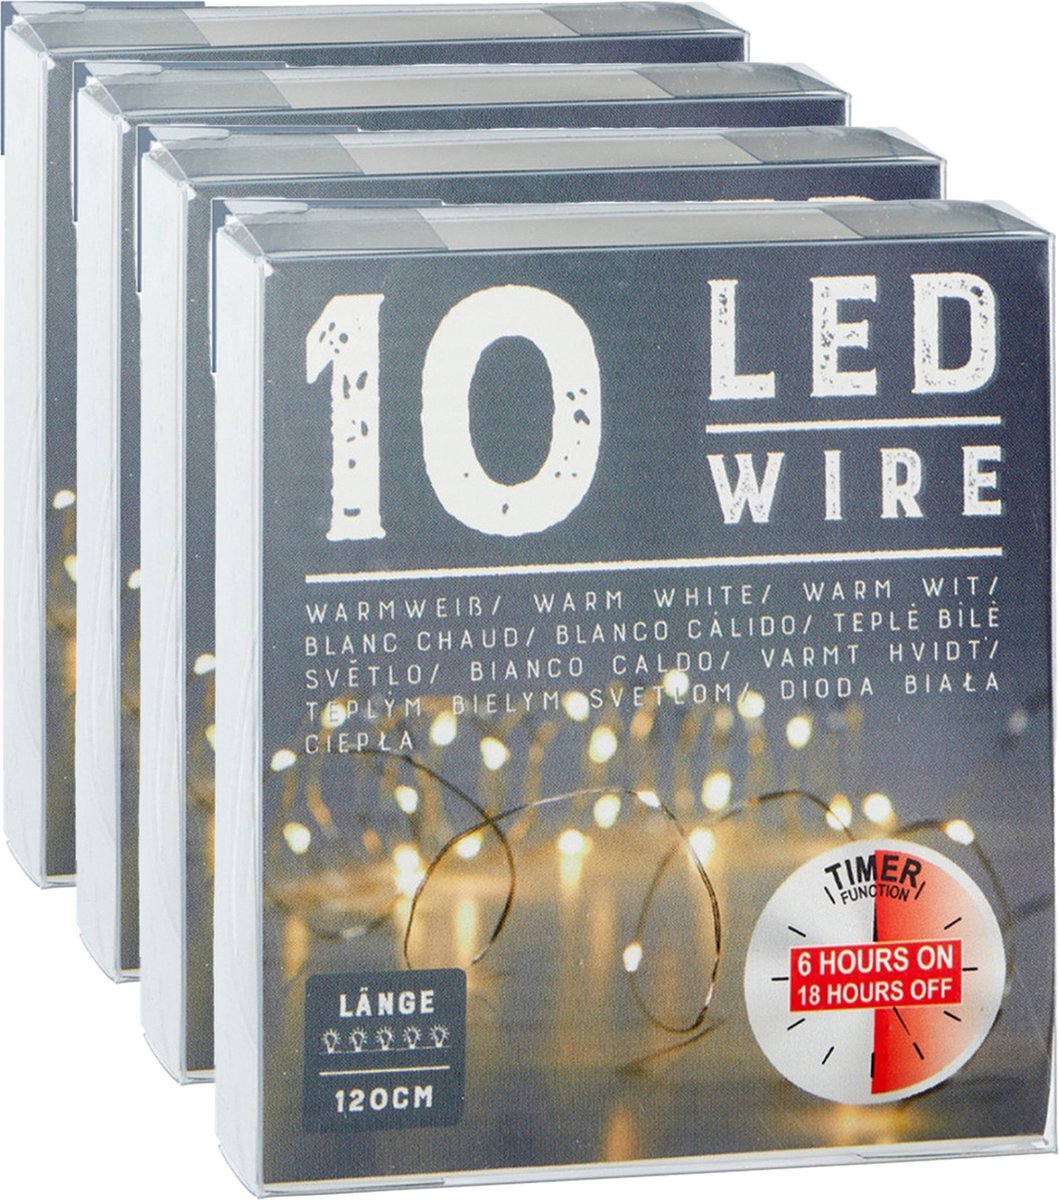 CEPEWA Draadverlichting/lichtsnoeren - 4 stuks - warm wit - 120 cm - timer